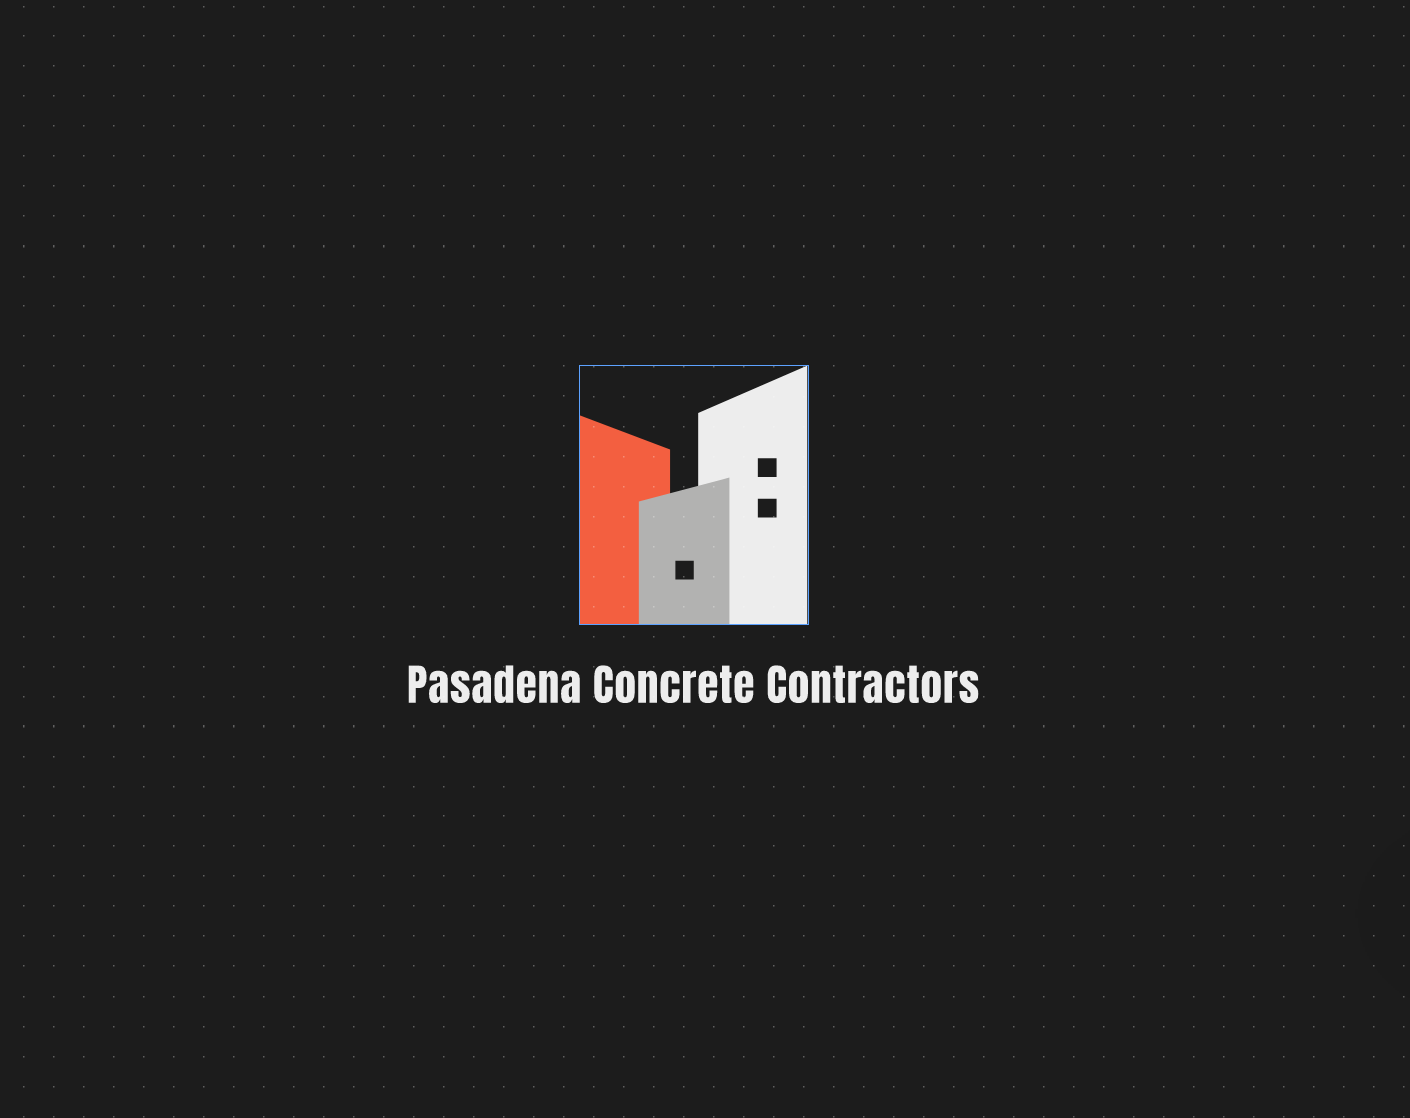 Pasadena Concrete Contractors